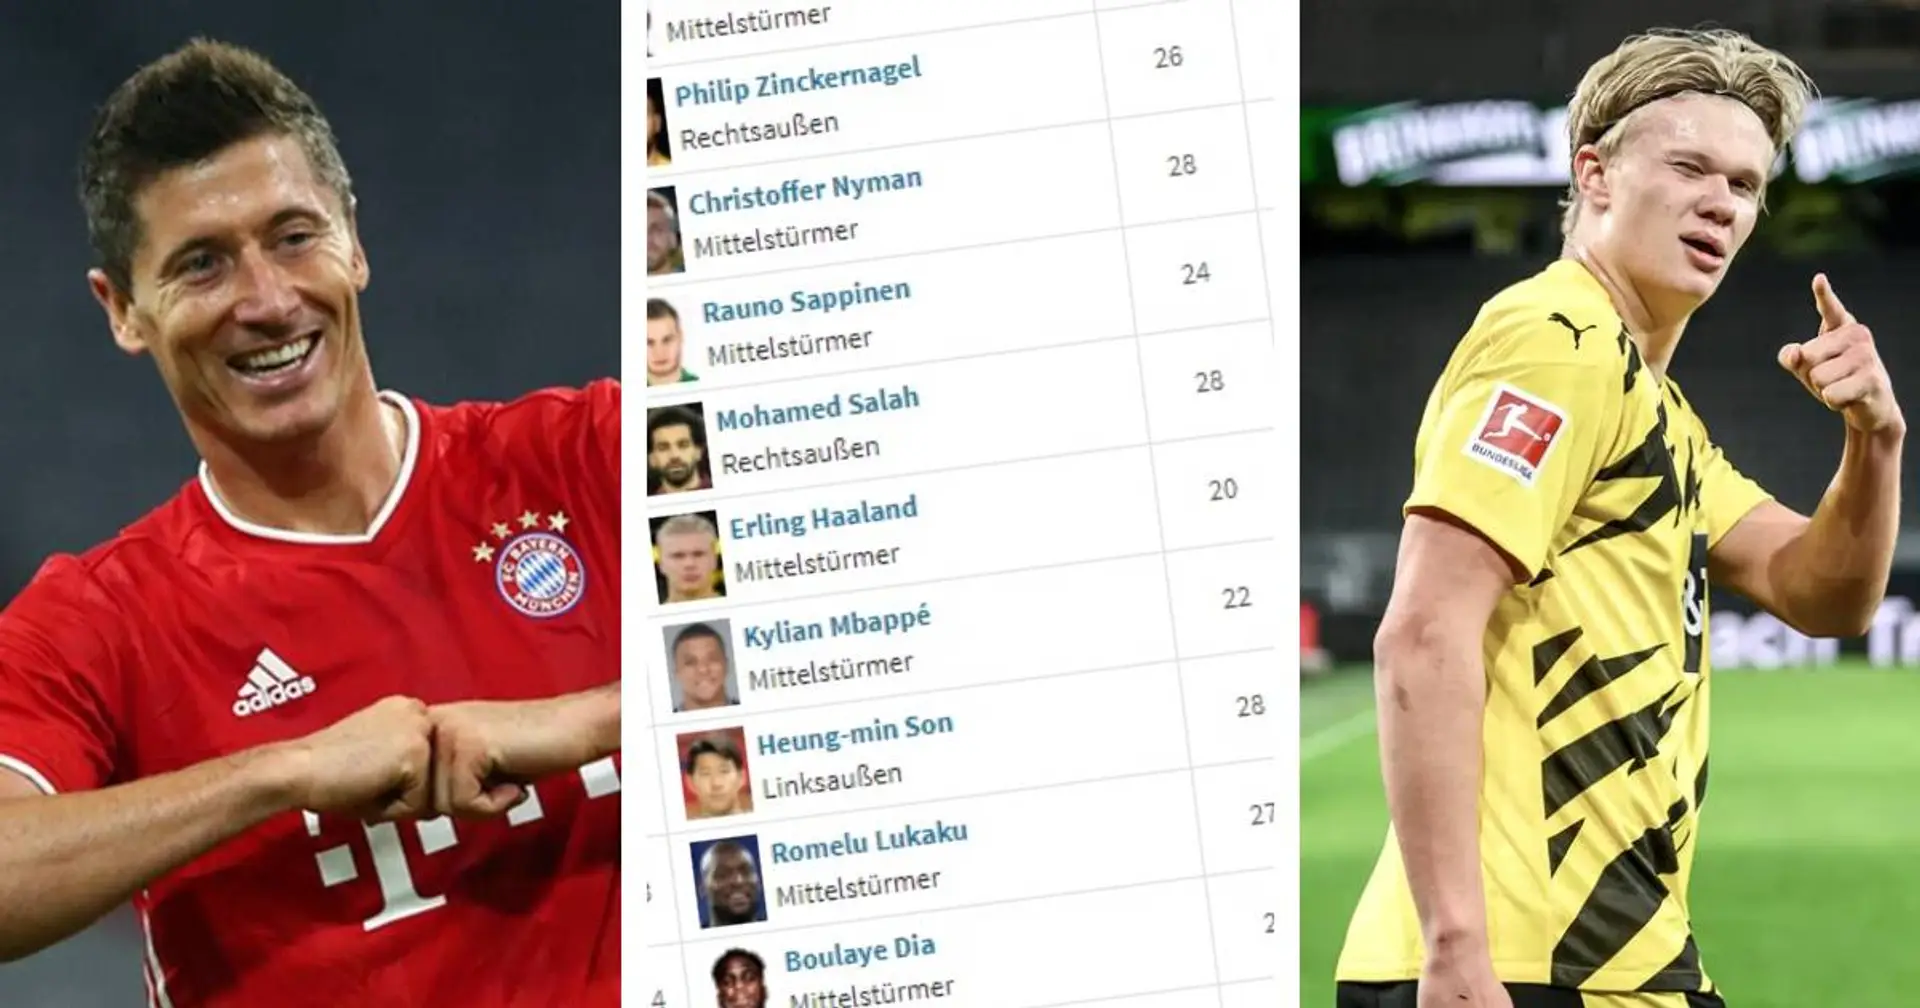 Das Rennen um den Goldenen Schuh: Lewandowski auf Platz 2, Haaland in der Top-10